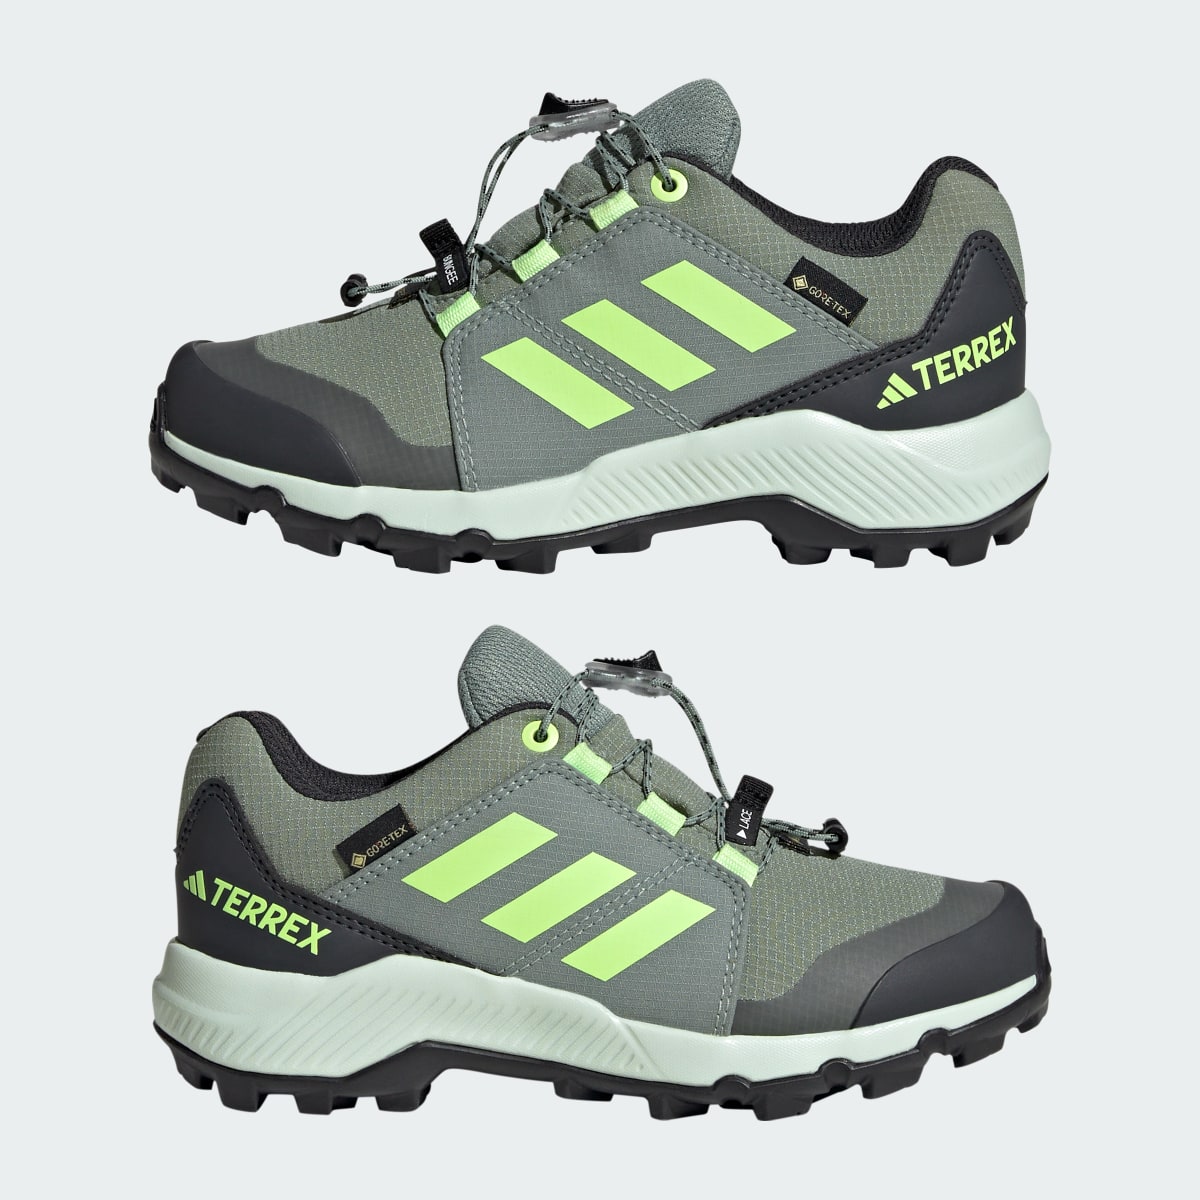 Adidas Sapatilhas de Caminhada GORE-TEX TERREX. 8